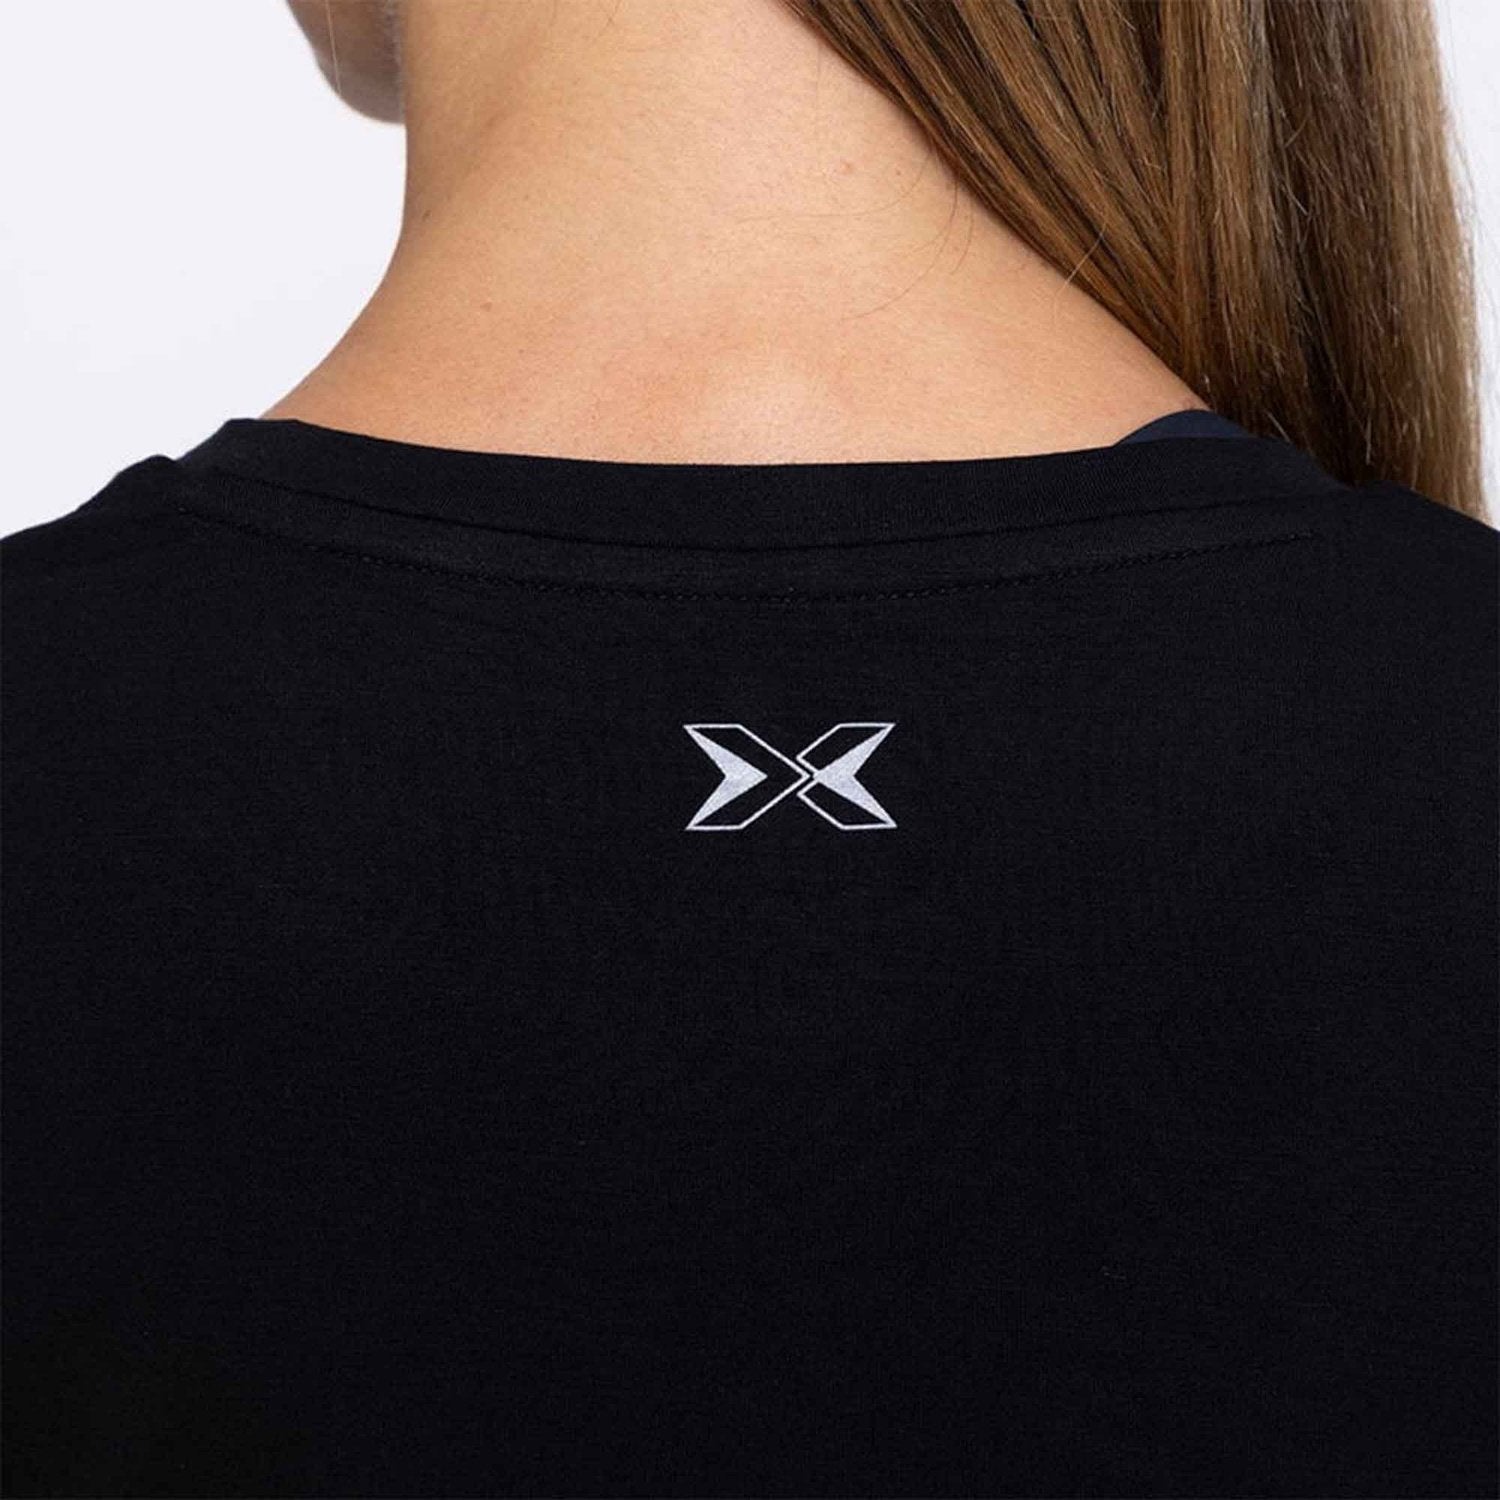 PicSil Damen Sport T-Shirt (Tee Core 0.2) Schwarz kaufen bei HighPowered.ch